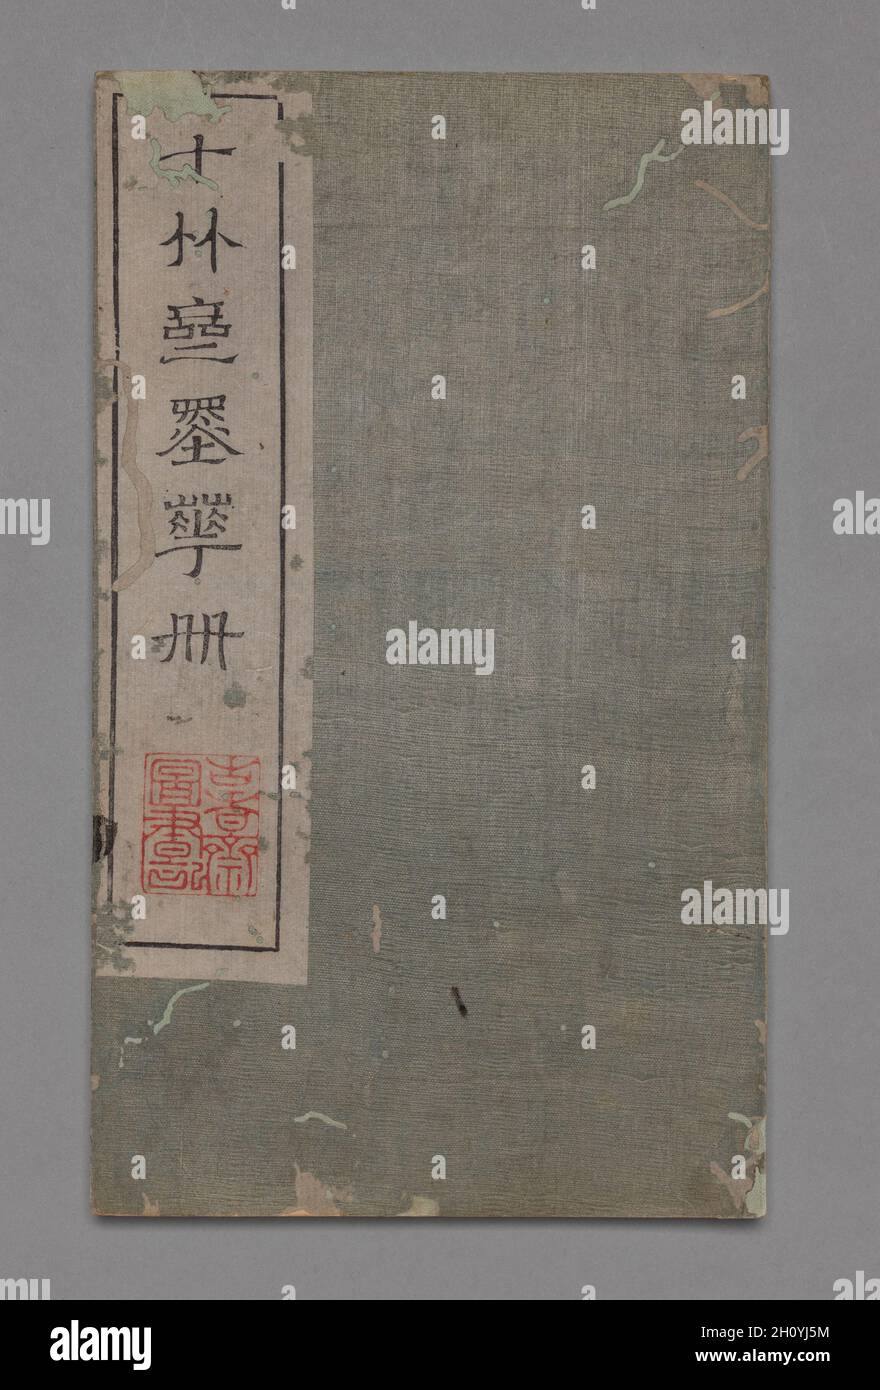 Manuel de peinture et de calligraphie de dix bambous (Shizhuzhai shuhua pu) : divers, 1675-1800.Hu Zhengyan (chinois, ch.1584–1674).Bloc de bois de couleur; ouvert et allongé: 23.7 x 27.9 cm (9 5/16 x 11 po.).Un collectionneur coréen du XVIIIe siècle Yu Man-joo (1755-1788) a écrit que « dépenser de l’argent pour des vêtements, des plats et des décorations de luxe pour la maison est un gaspillage, mais acquérir des outils d’écriture sophistiqués contribue à développer un goût élégant et une grande perspicacité. »Inspirés par des discours esthétiques sur l'élégance contre la vulgarité dans la littérature chinoise de Ming tardif, les collectionneurs coréens de la fin des années 1700 et 1800 se sont efforcée du faire Banque D'Images